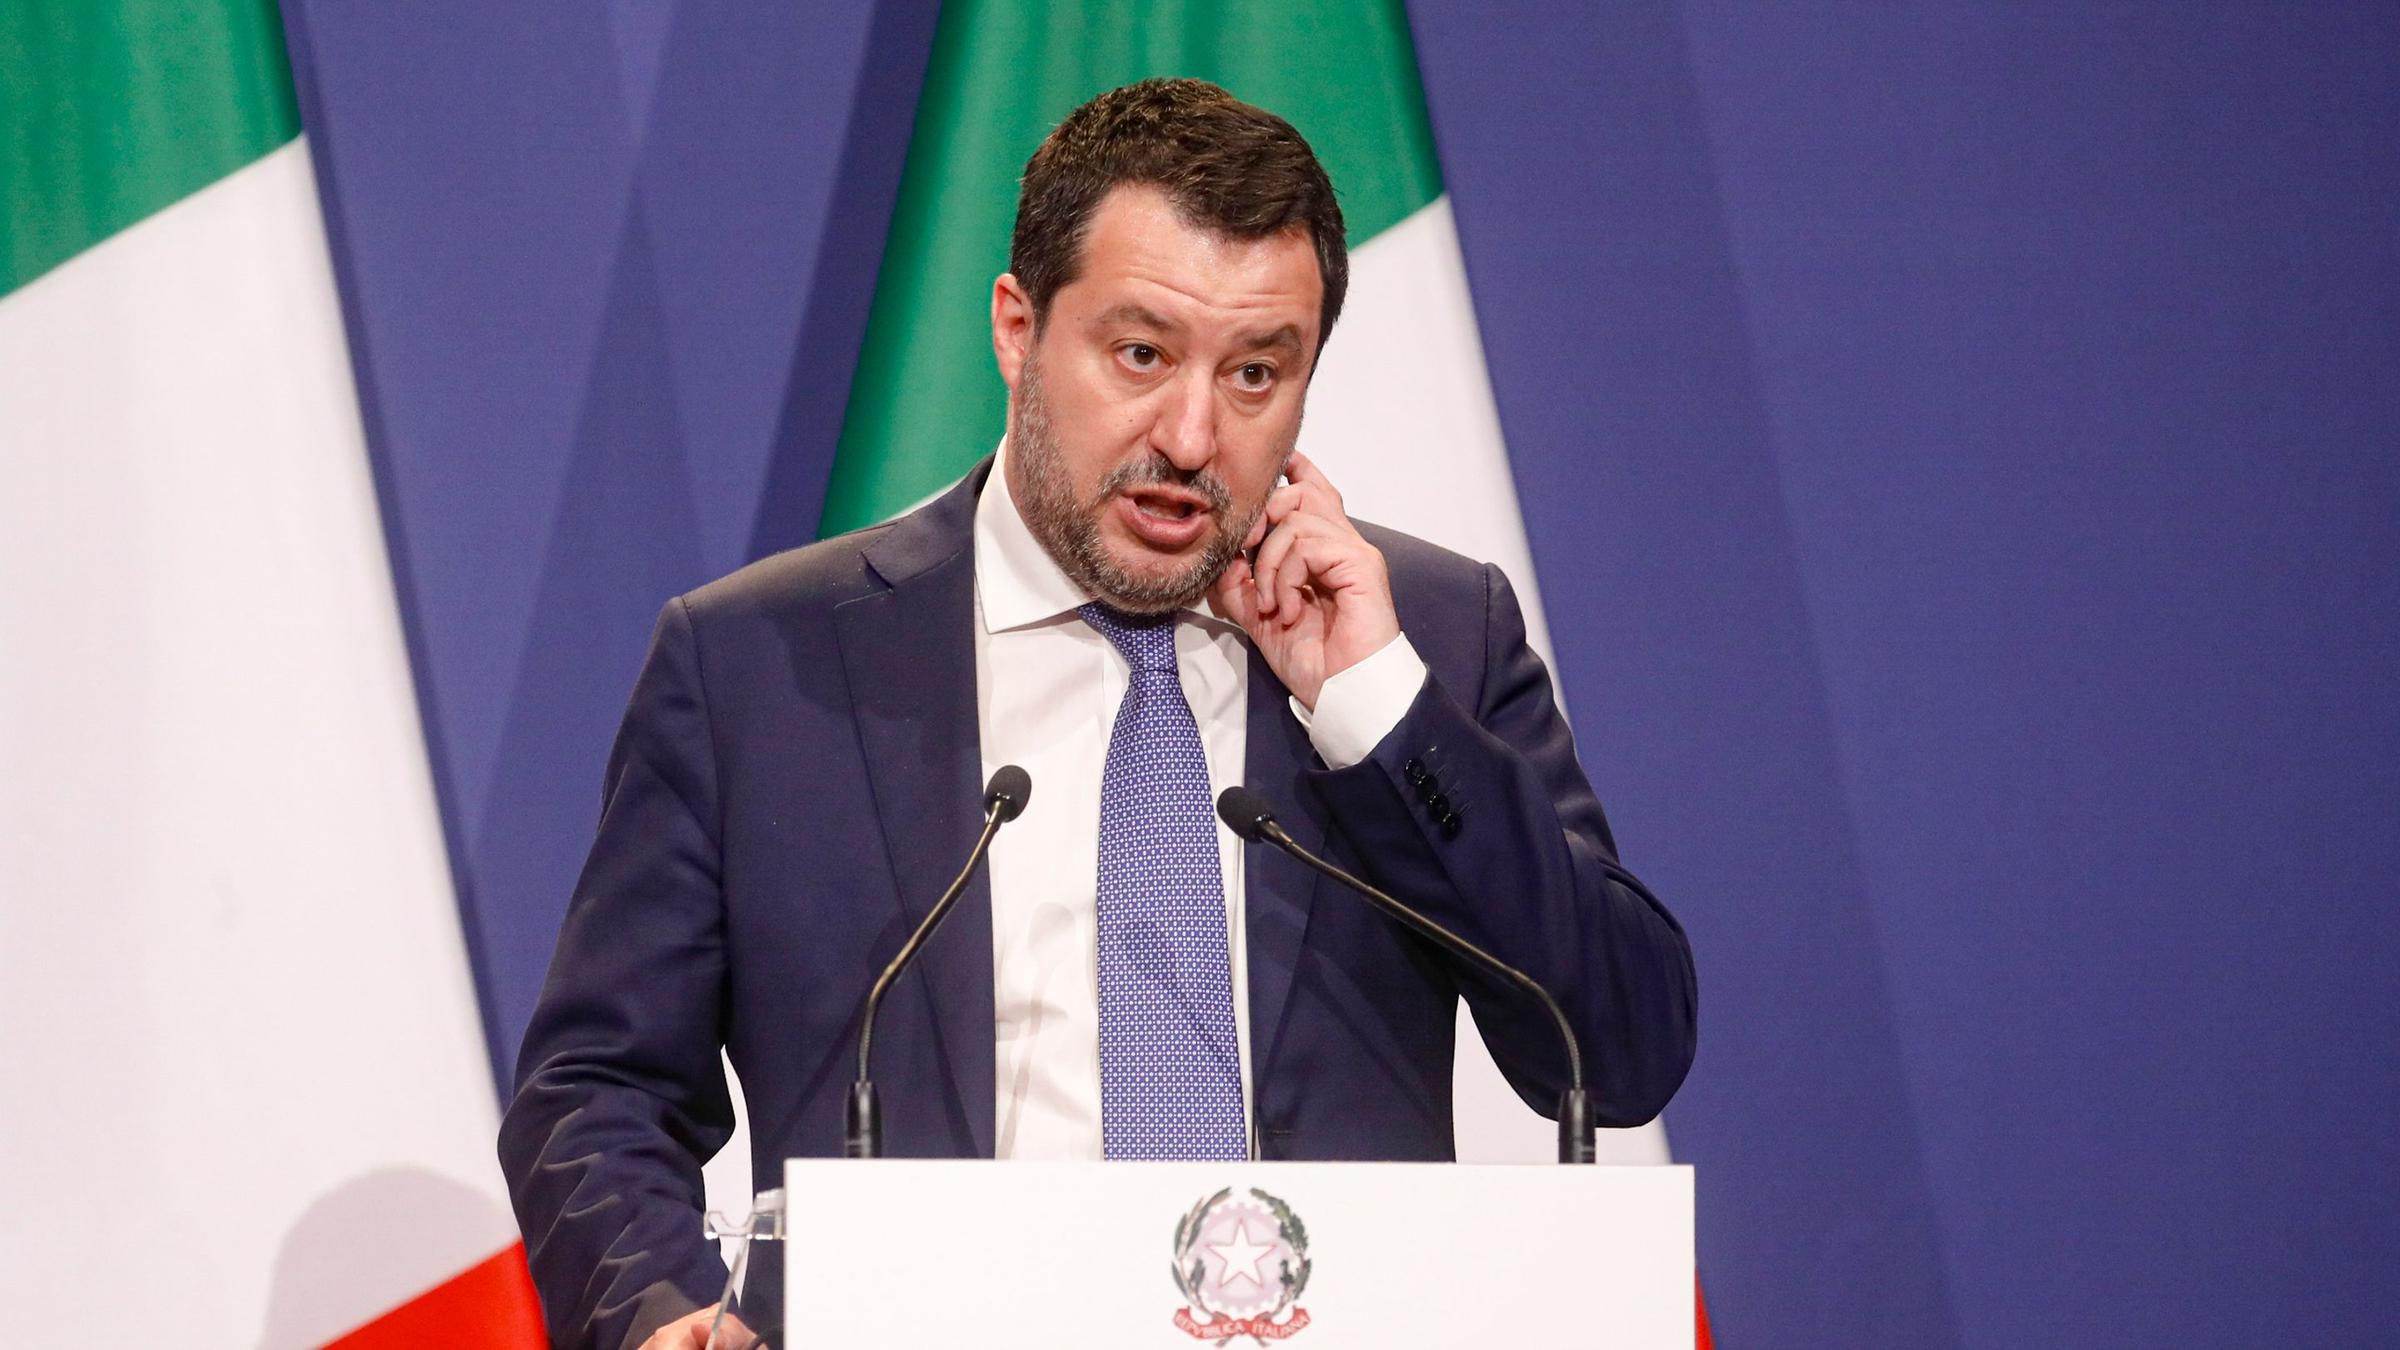 Matteo Salvini spricht während einer Pressekonferenz.